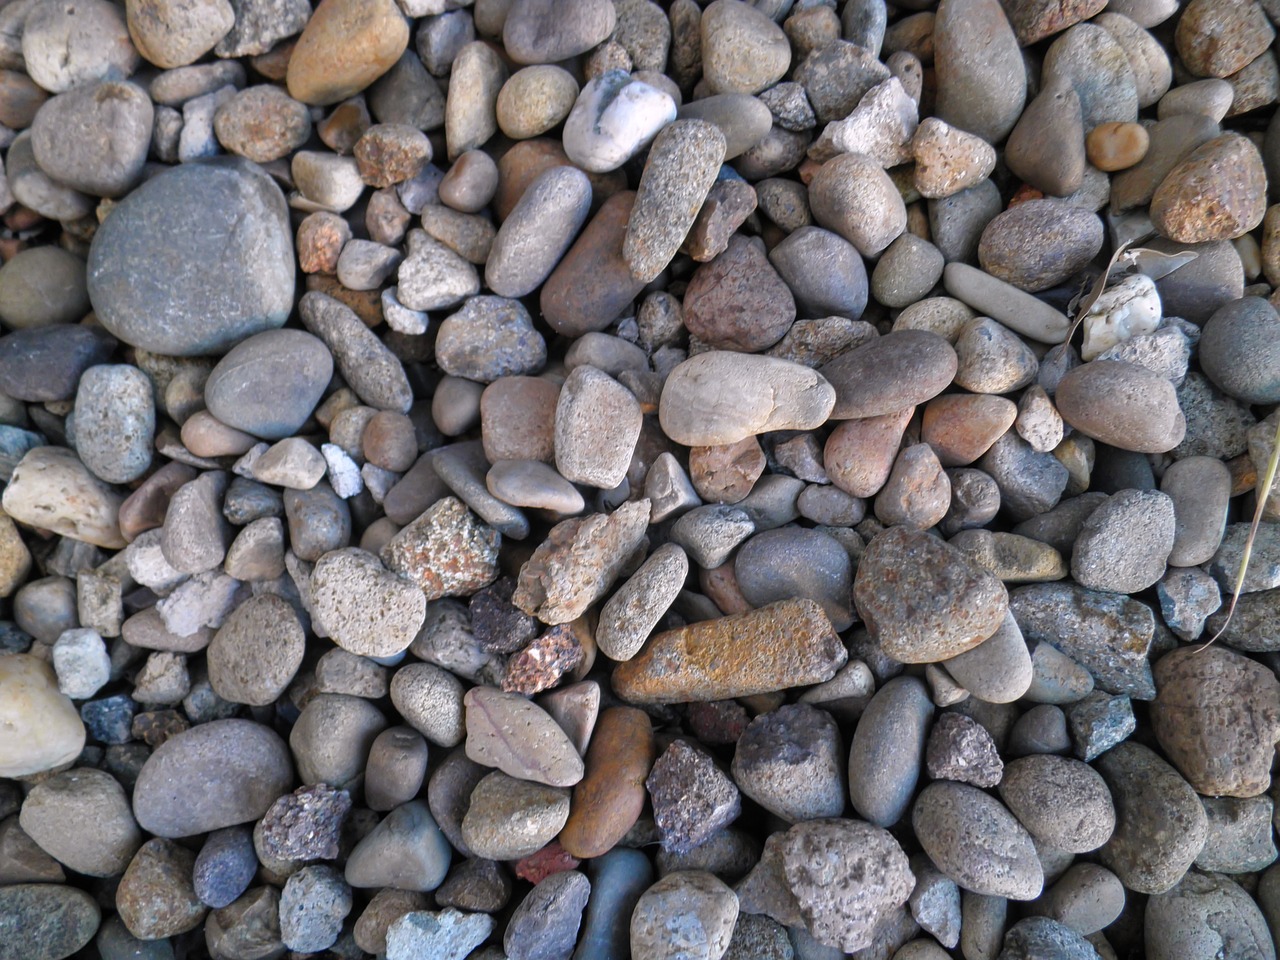 Grind stone. Камешки на земле. Камушки в грунте. Камешки для грунта. Грунт с камнями.